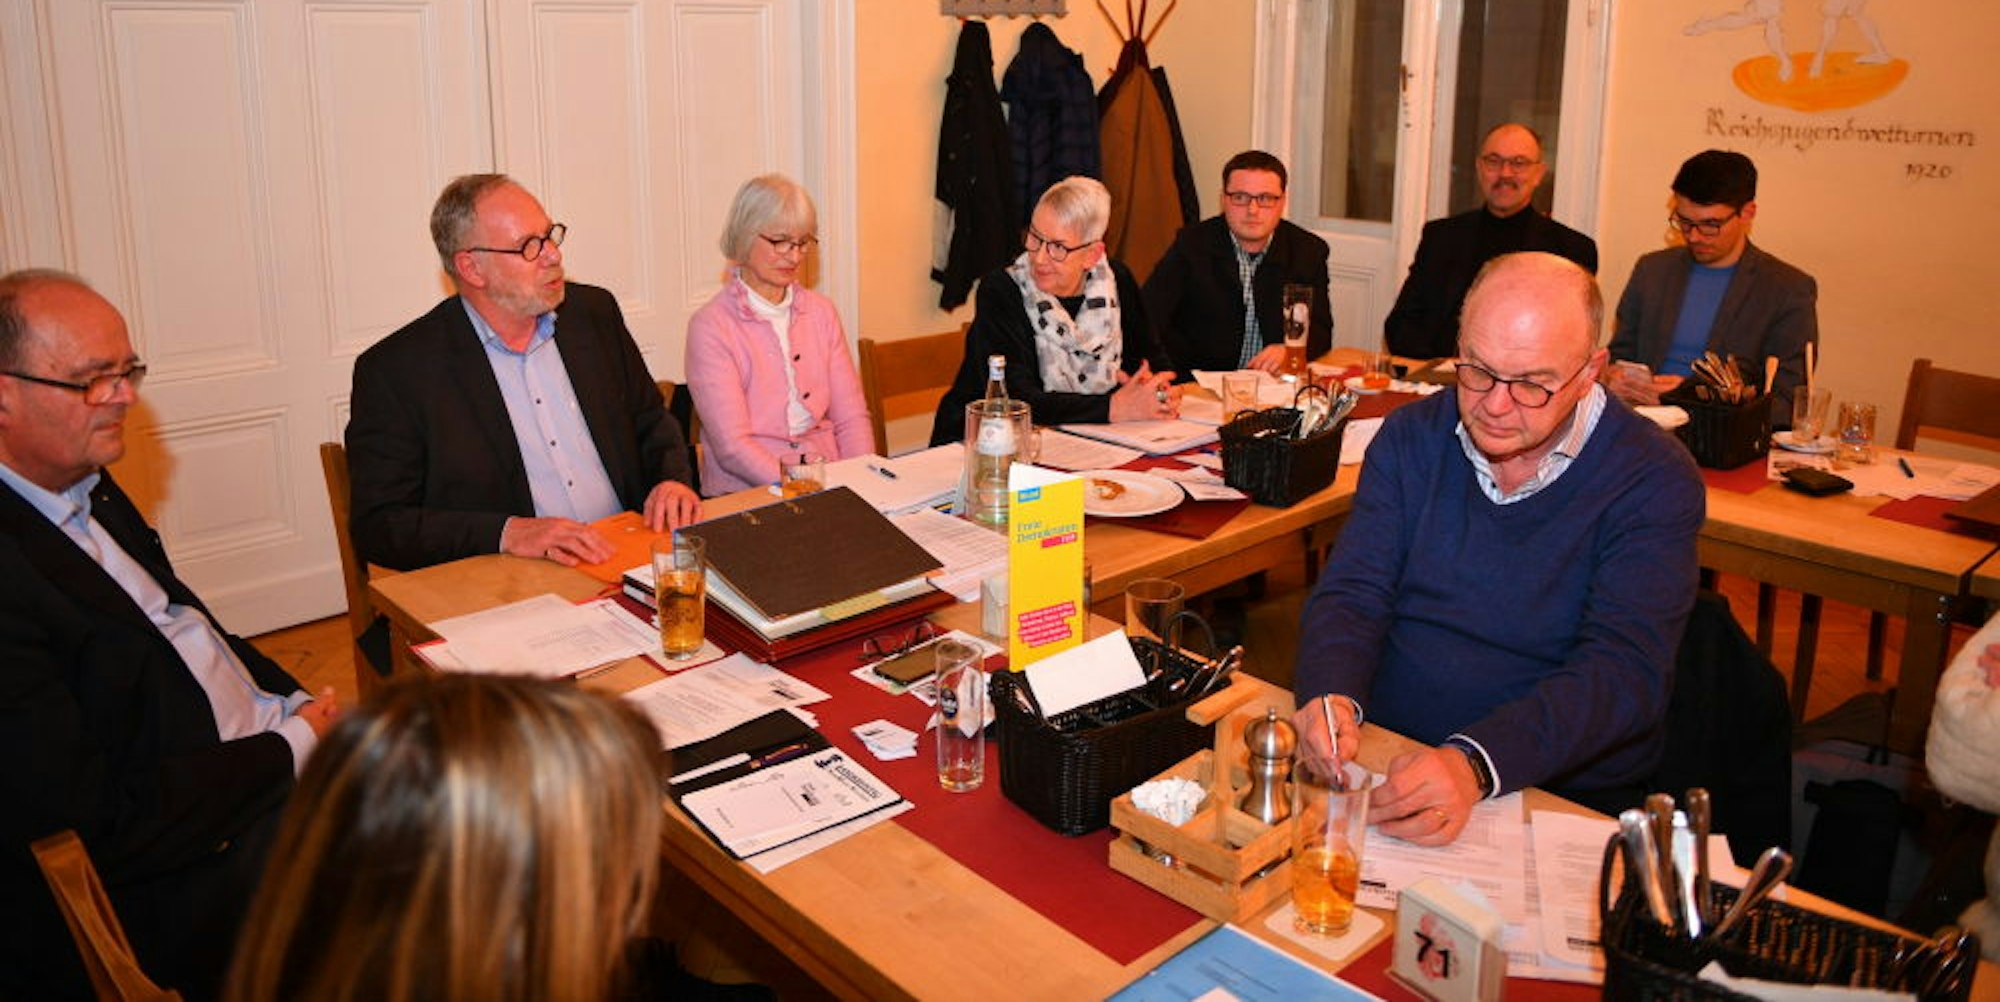 Thomas Hein (l.) hat sich am Abend bei der FDP vorgestellt. Am Ende stimmte die Mehrheit der anwesenden Mitglieder dafür, keinen Kandidaten bei der Bürgermeisterwahl zu unterstützen.